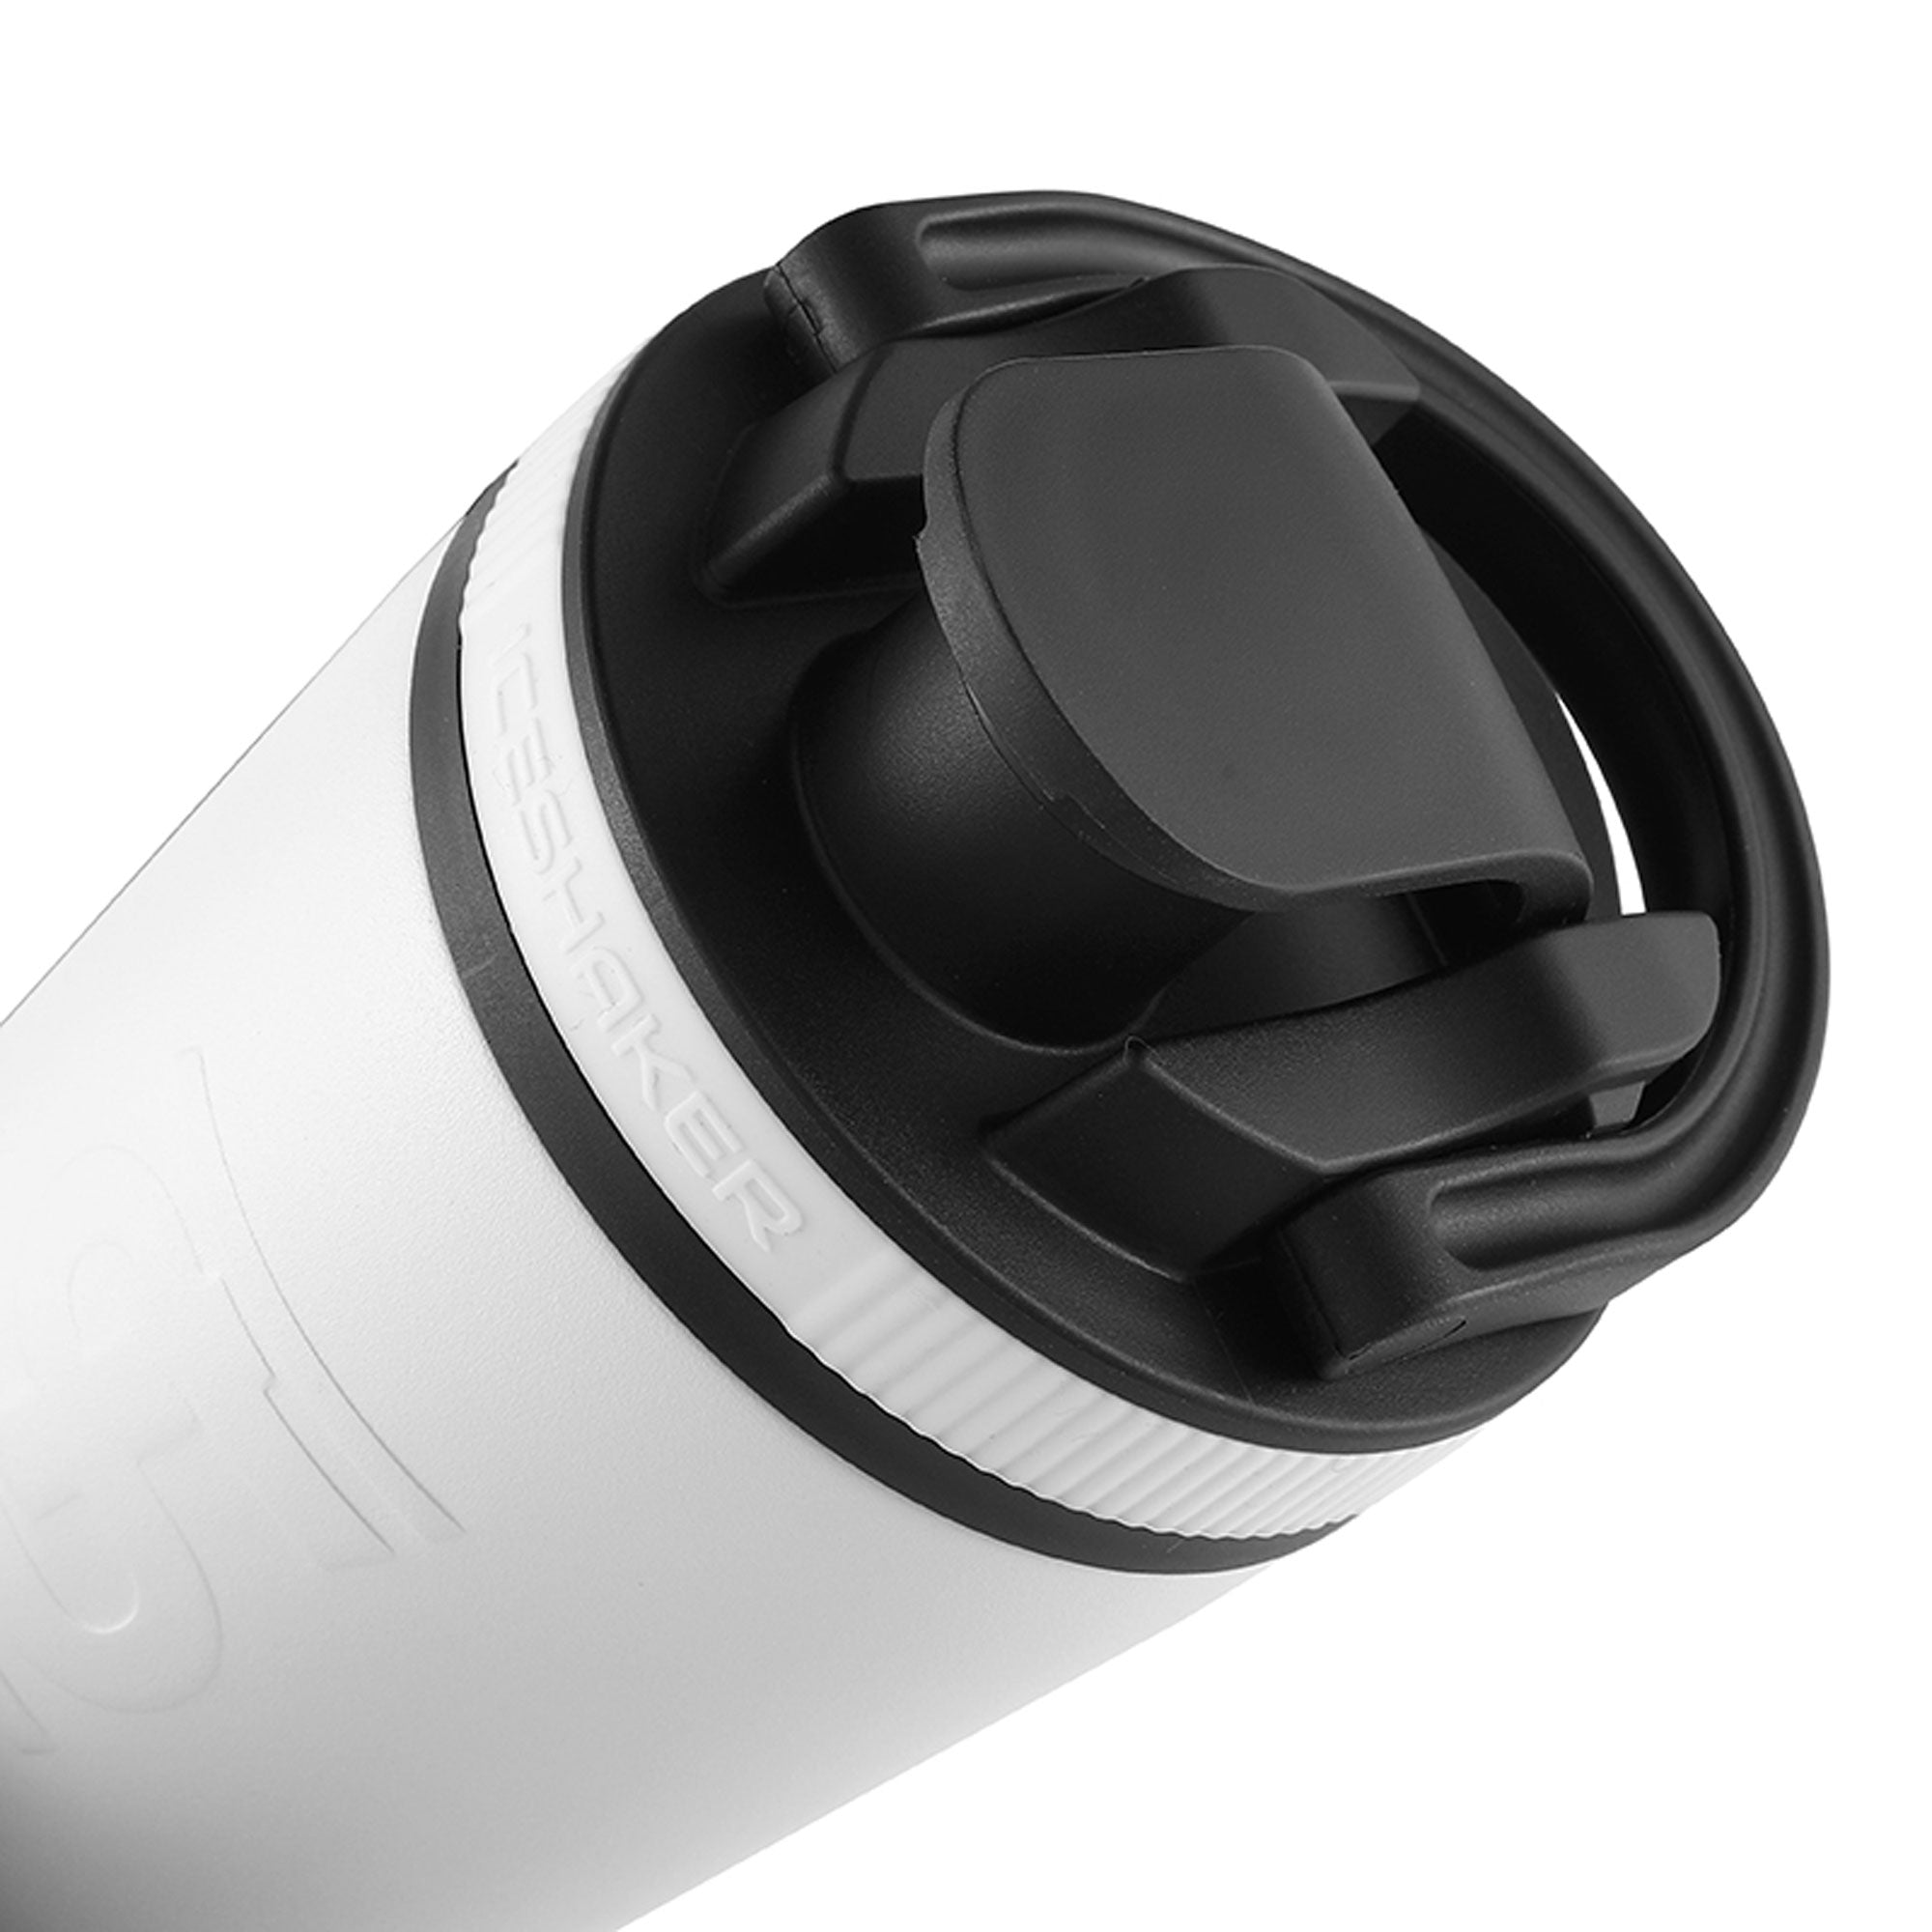 White Ice Shaker Speaker Bottle